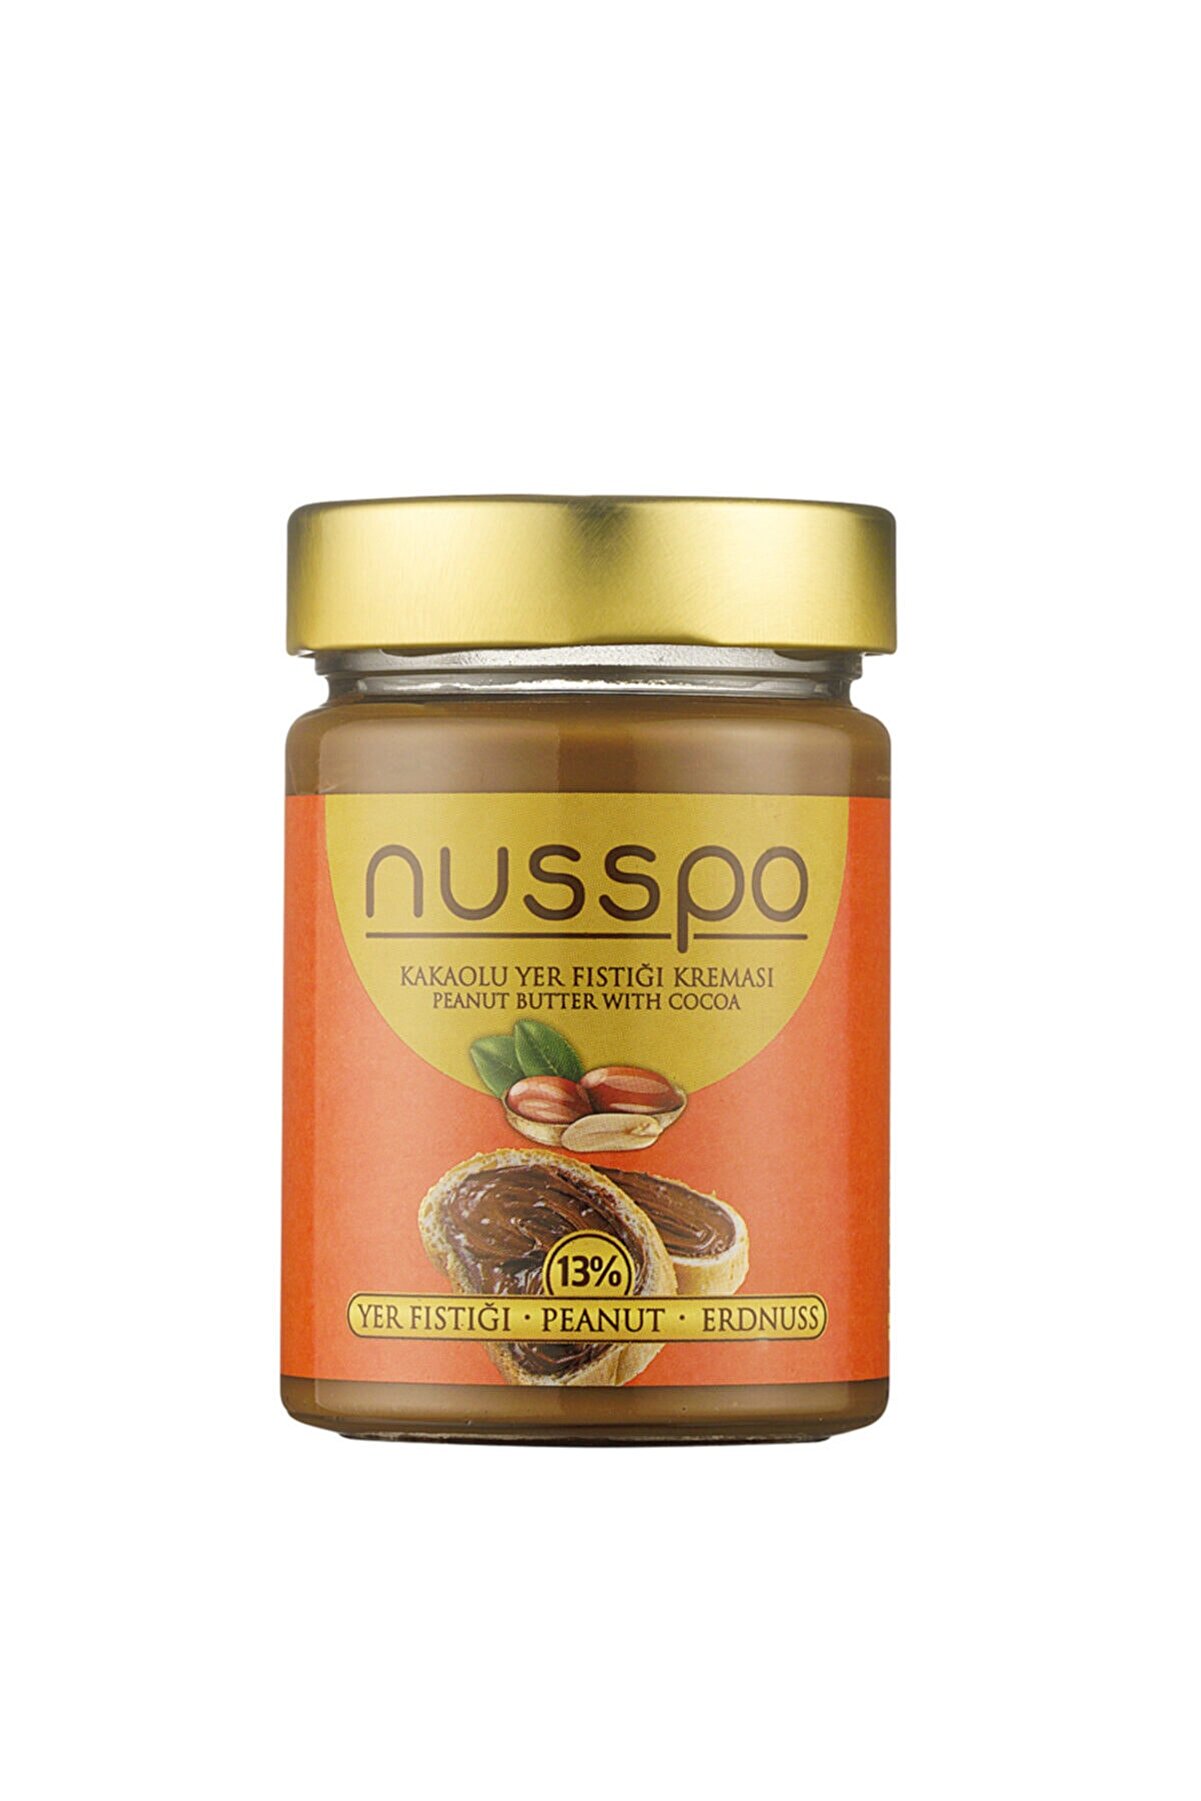 NUSSPO Kakaolu Yer Fıstığı Kreması 350 gr